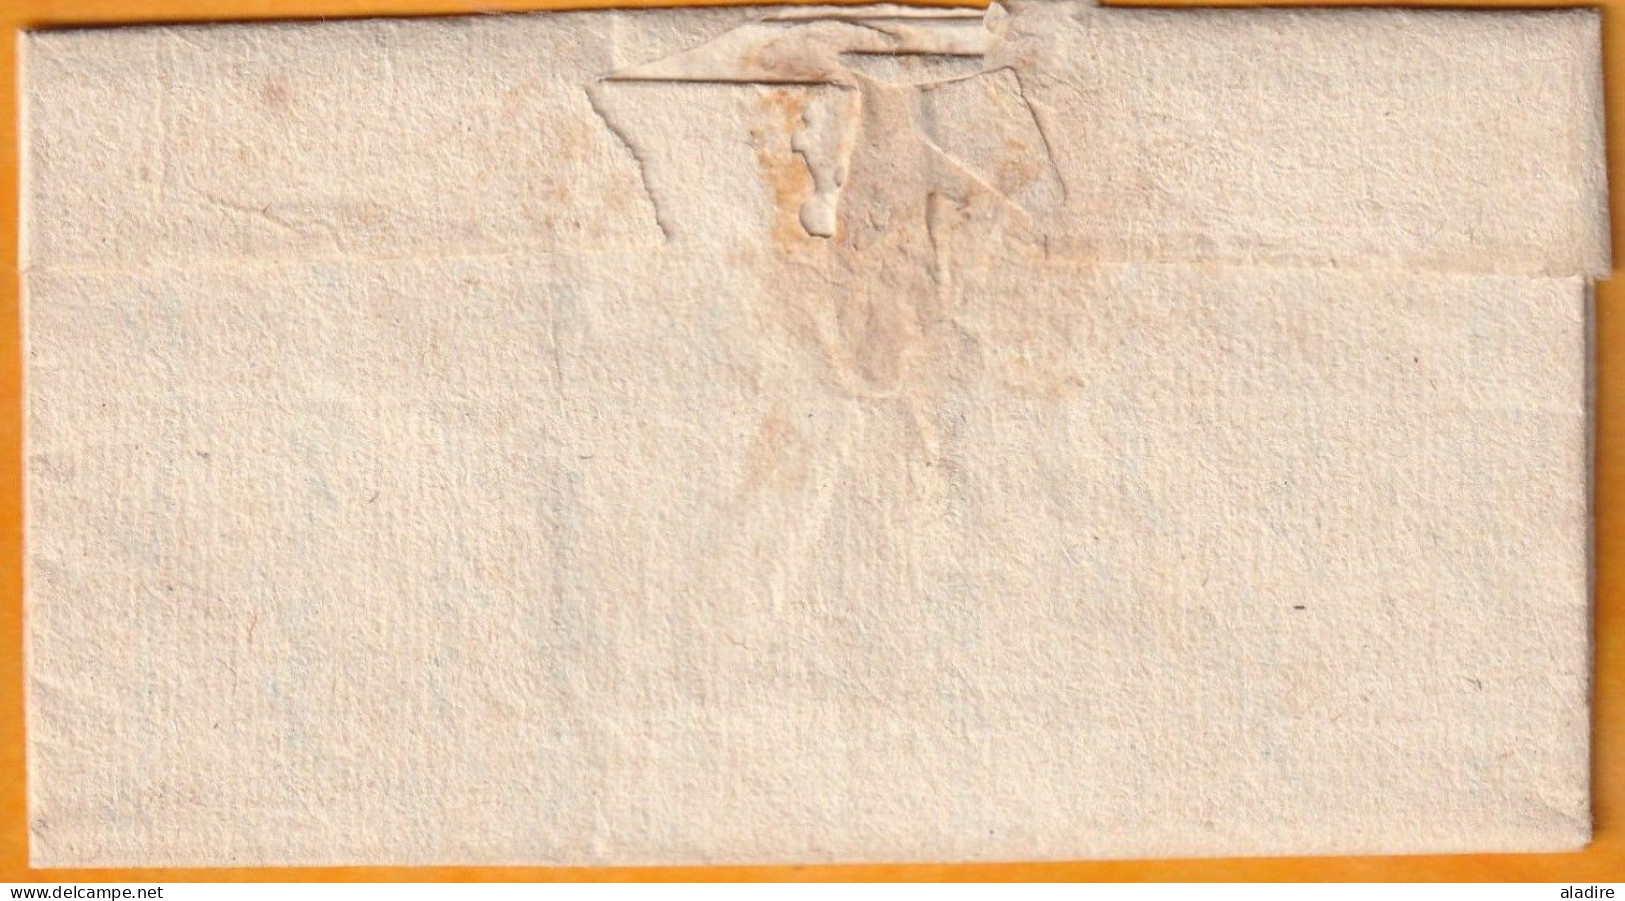 1771 - Marque Postale Manuscrite VILLENEUVE DE BERG, Ardèche Sur Lettre Vers BARJAC, Gard - Taxe 5 - 1701-1800: Precursors XVIII